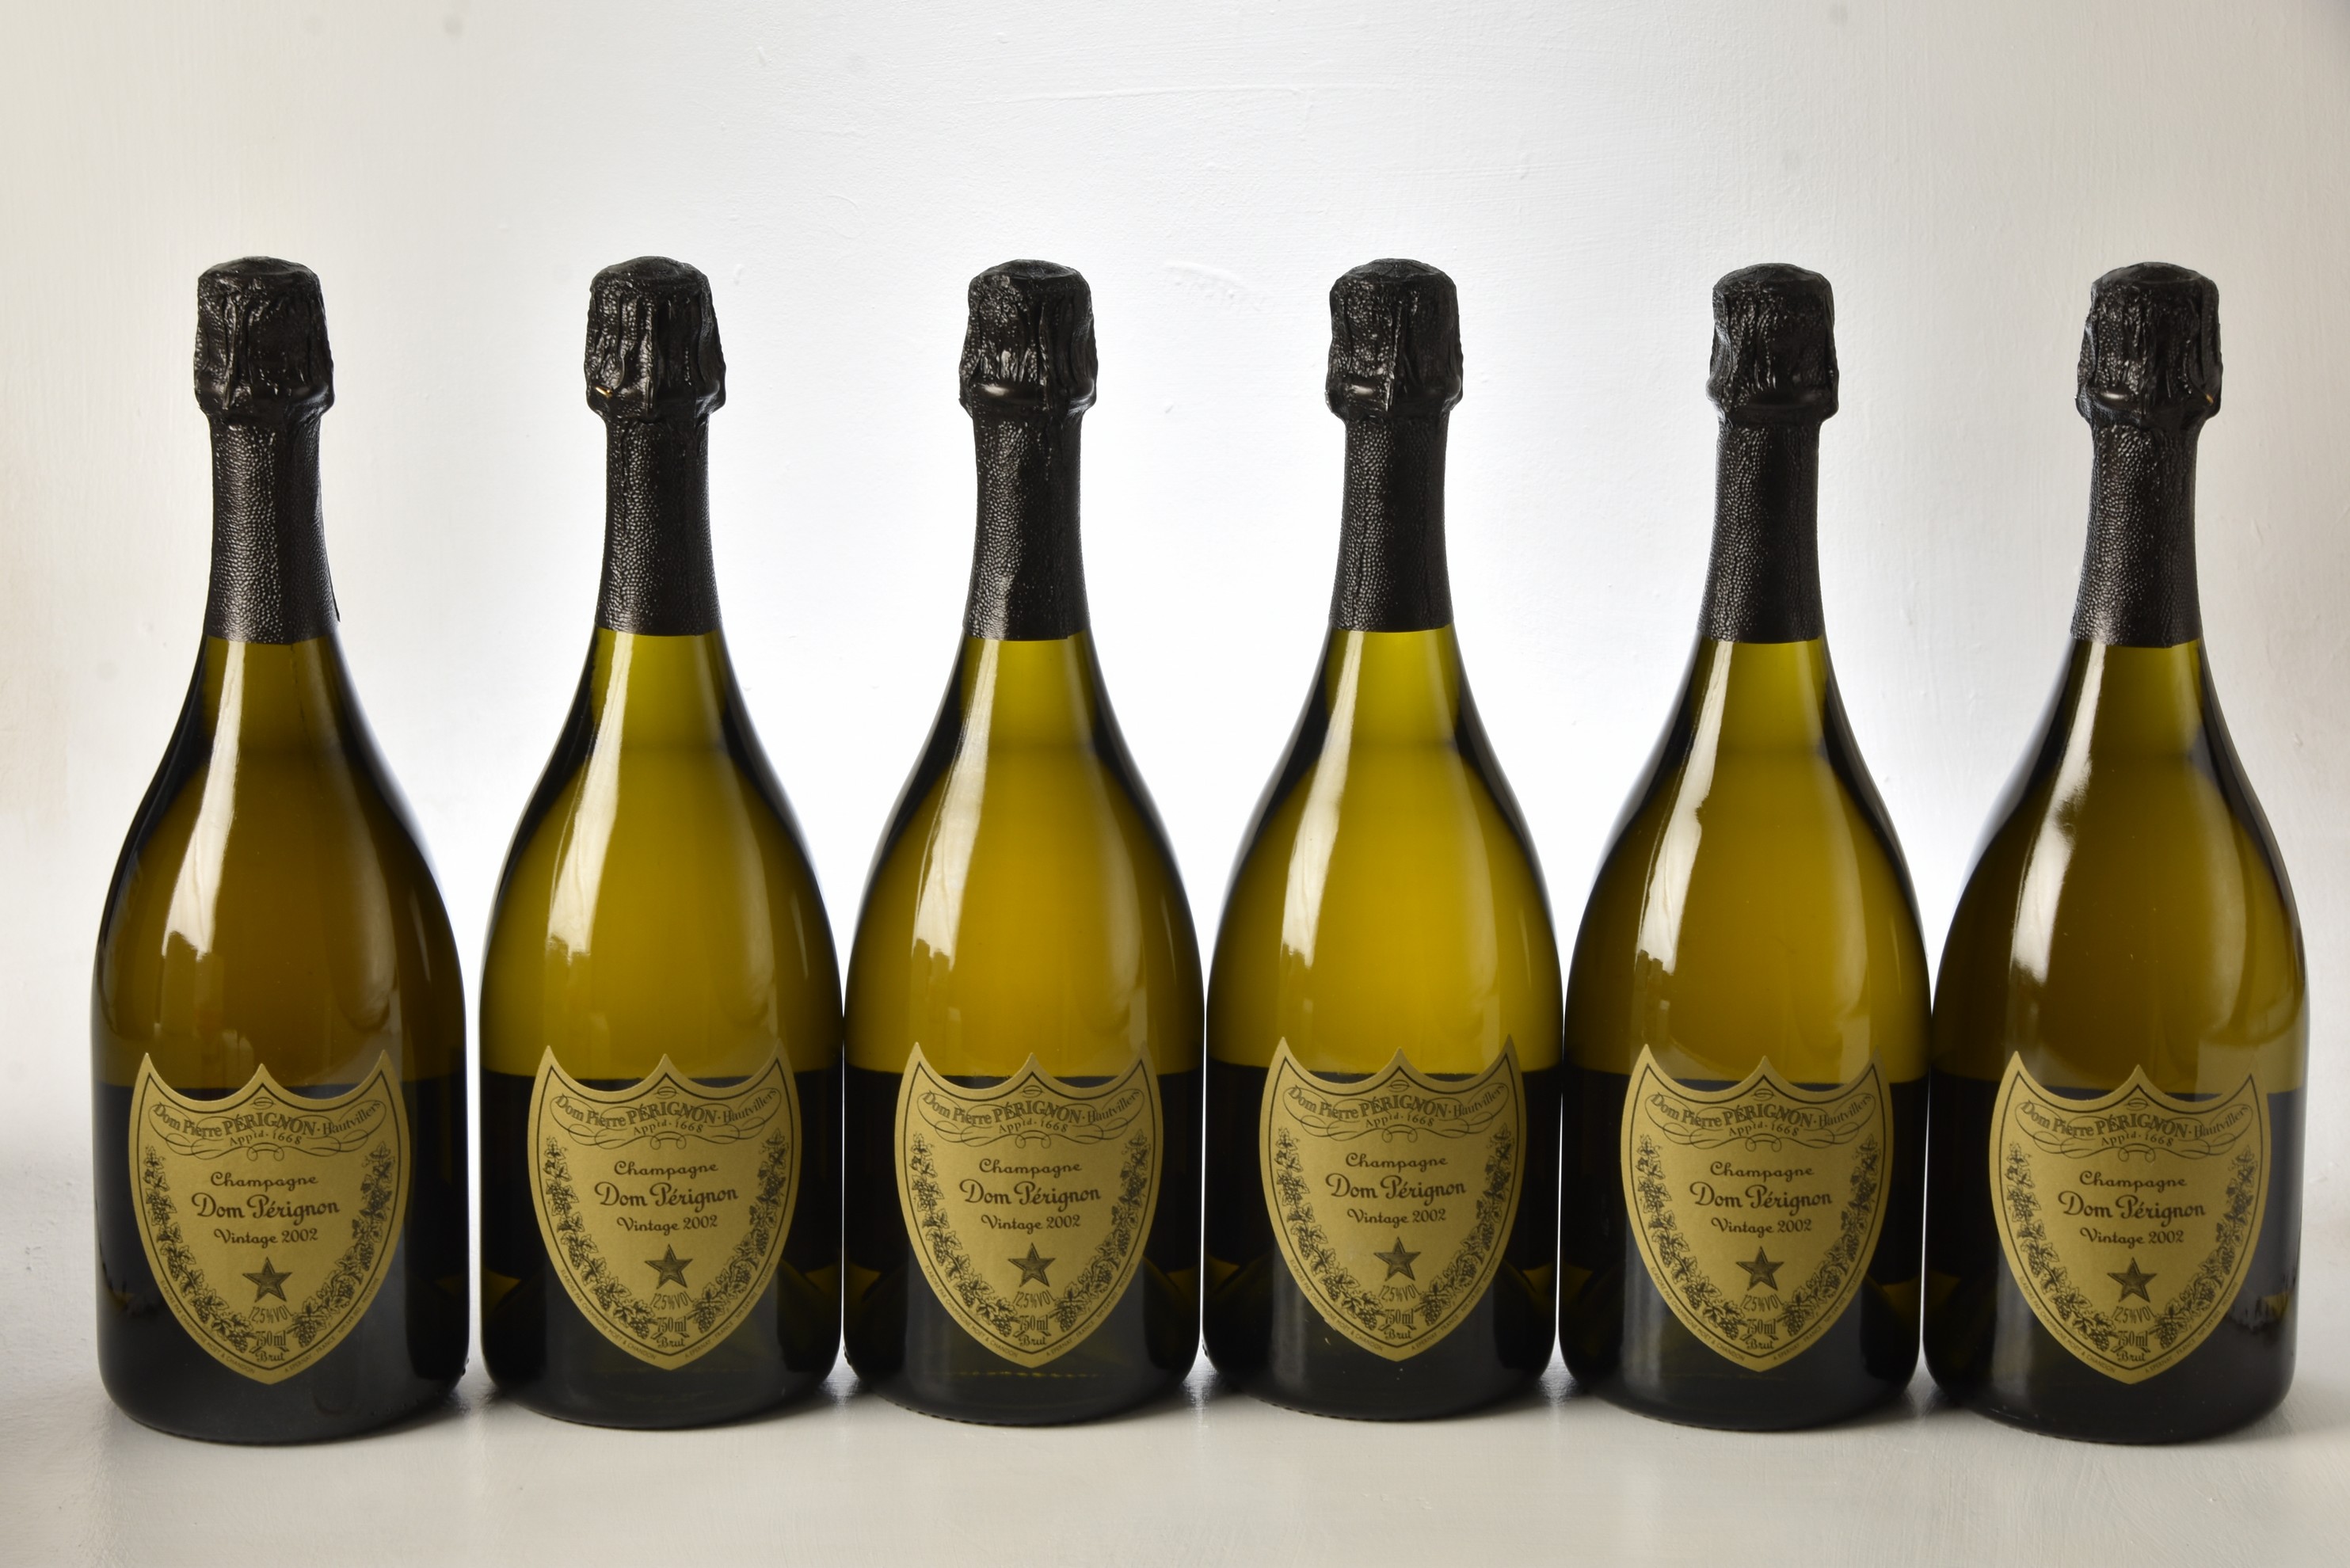 Champagne Dom Perignon 2002 6 bts OCC IN BOND